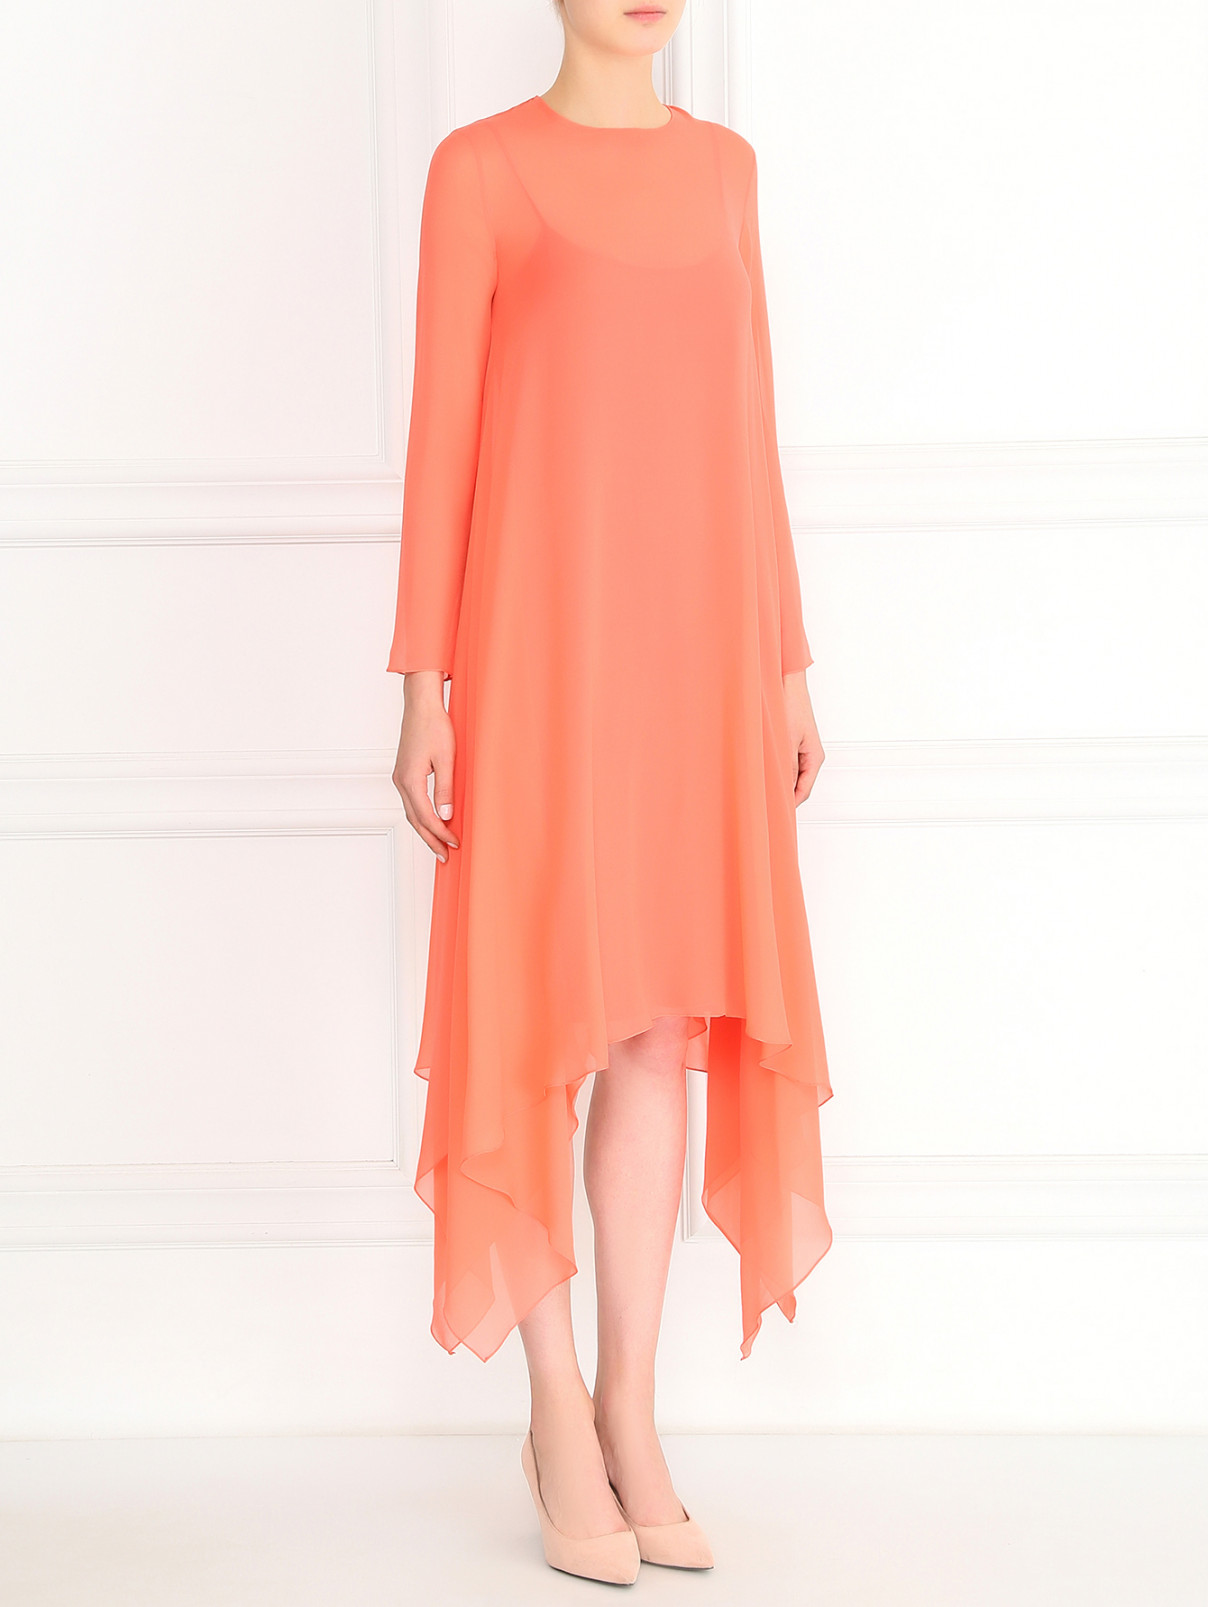 Свободное платье из шелка с длинными рукавами Pianoforte  –  Модель Общий вид  – Цвет:  Оранжевый